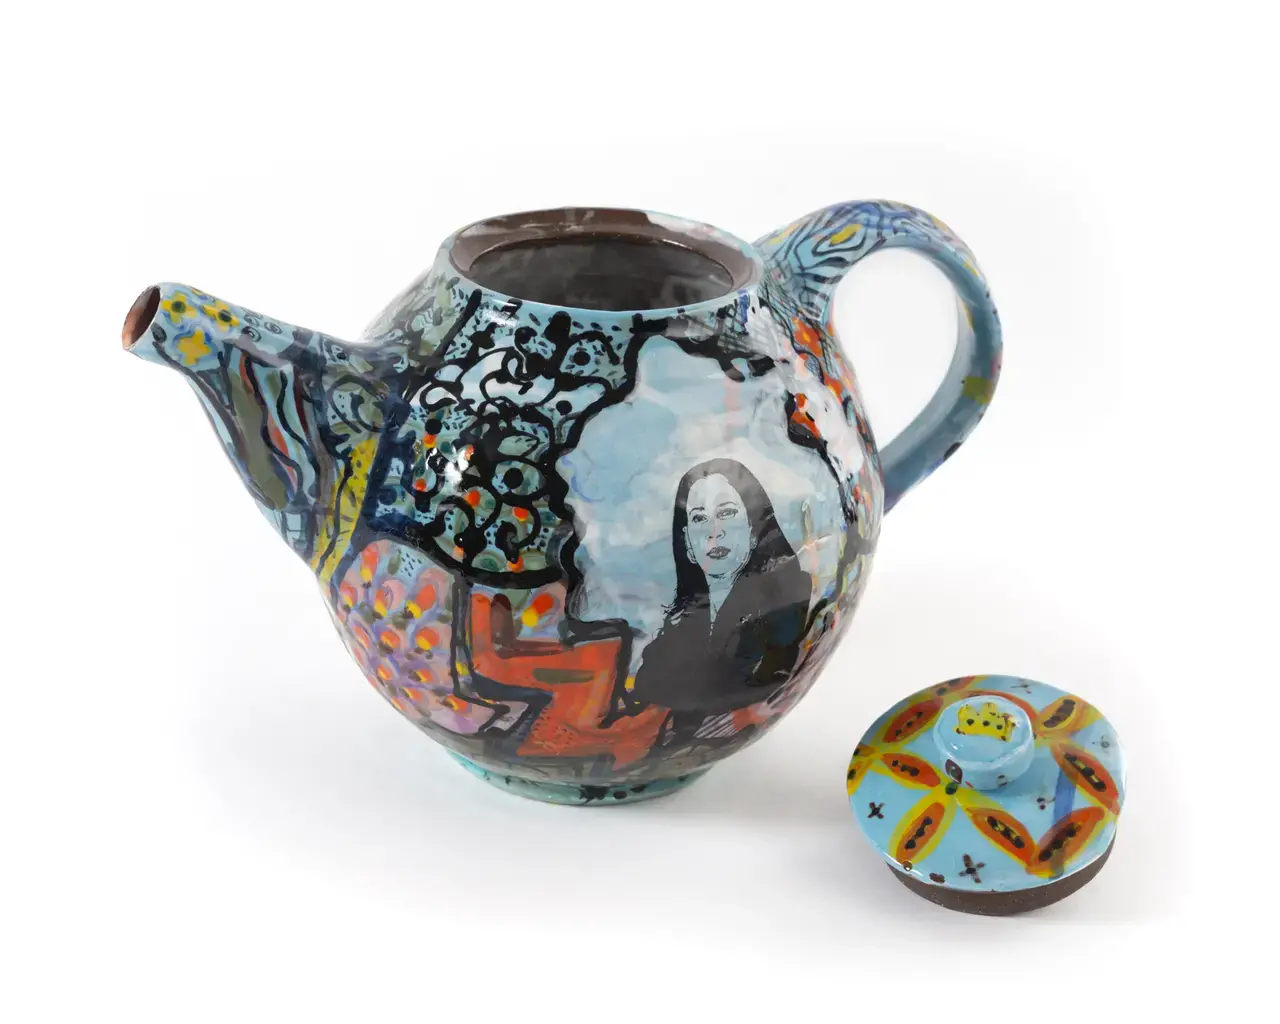 Pew Fellow Roberto Lugo,&nbsp;Kamala Harris Teapot,&nbsp;2020, glazed stoneware,&nbsp;5.75” x 9.5” x 6”. Photo by Patricia Swanson, courtesy of Wexler Gallery.&nbsp;